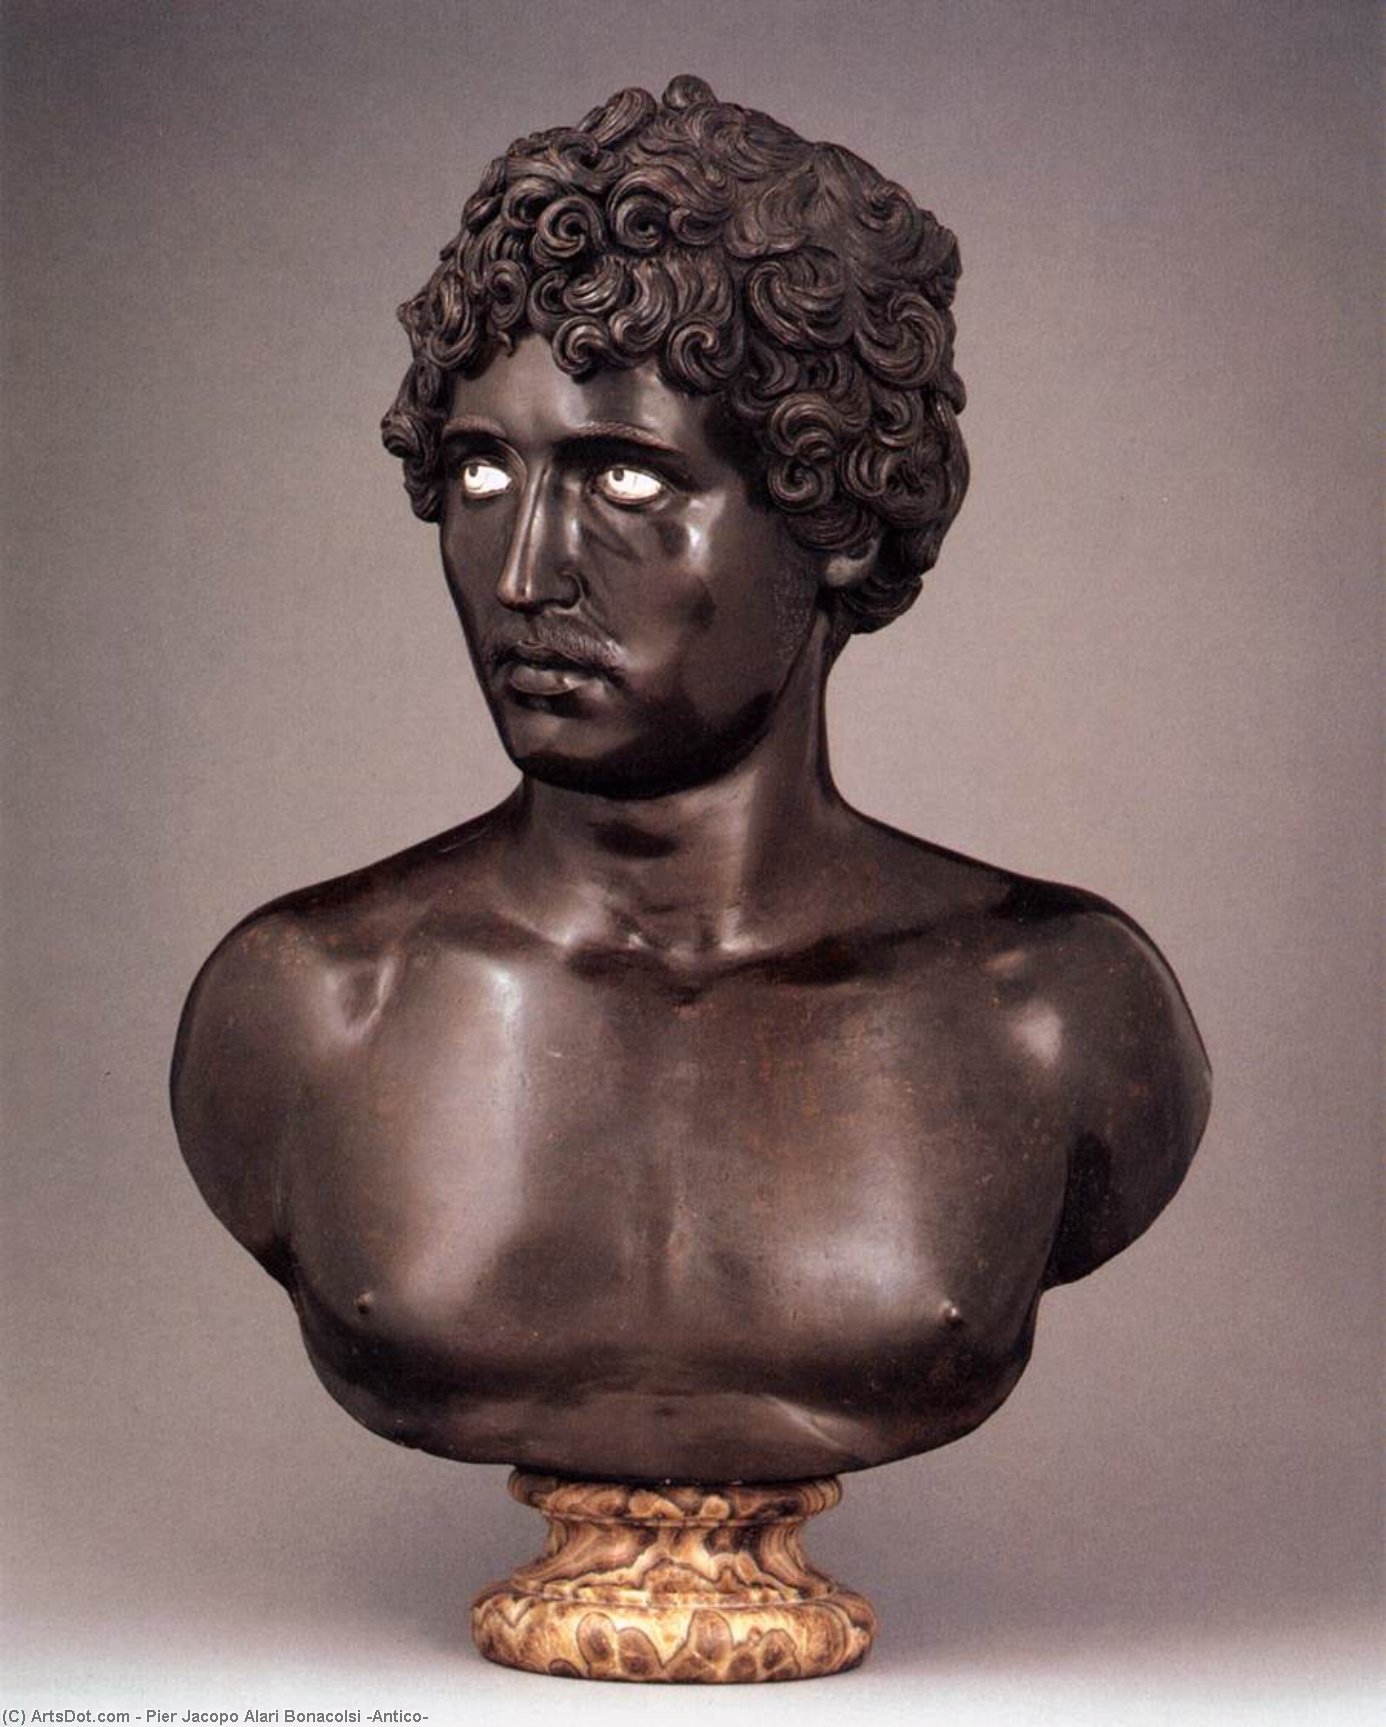 Wikioo.org - Bách khoa toàn thư về mỹ thuật - Vẽ tranh, Tác phẩm nghệ thuật Pier Jacopo Alari Bonacolsi (Antico) - Bust of a Young Man